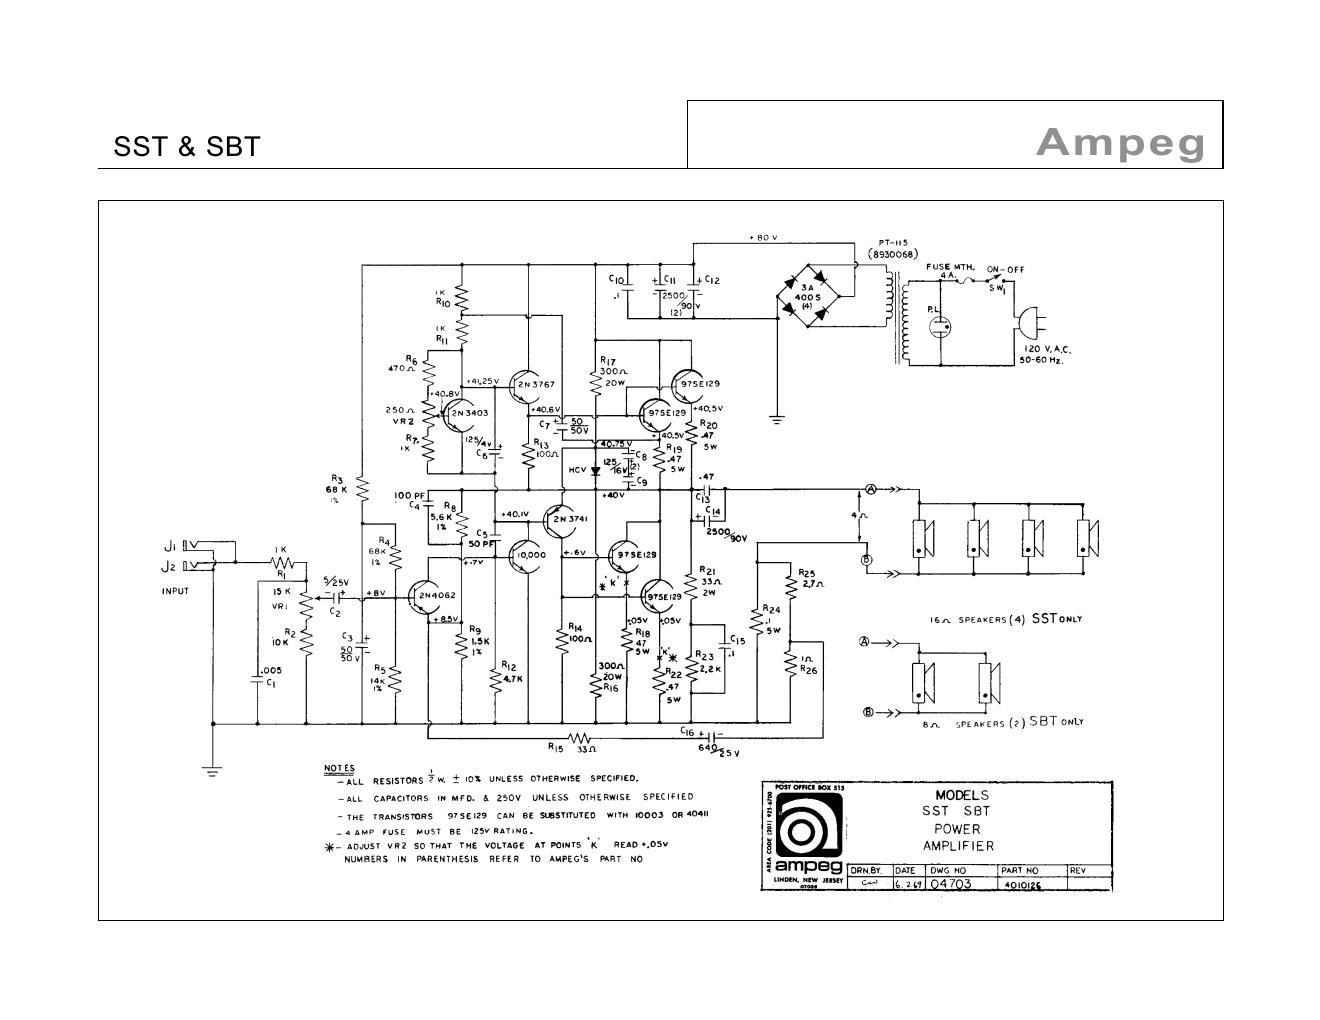 ampeg sbt sst power amp schematic